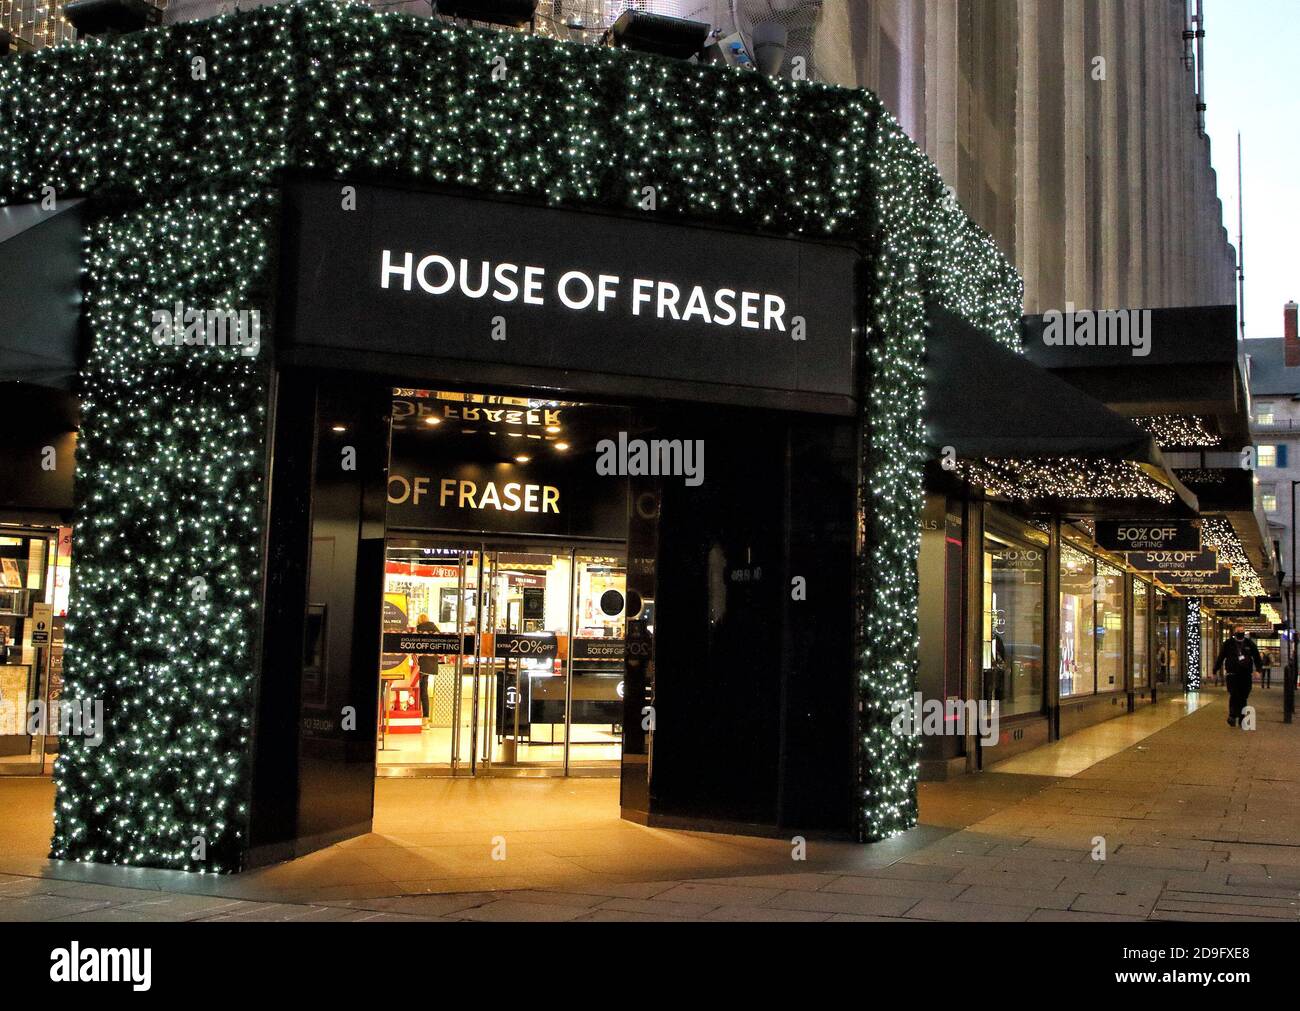 Le grand magasin House of Fraser décoré de lumières de Noël dans son magasin phare d'Oxford Street.le magasin House of Fraser d'Oxford Street s'est allumé pour Noël, malgré la fermeture de tous les magasins de détail non essentiels pendant les quatre prochaines semaines. Banque D'Images